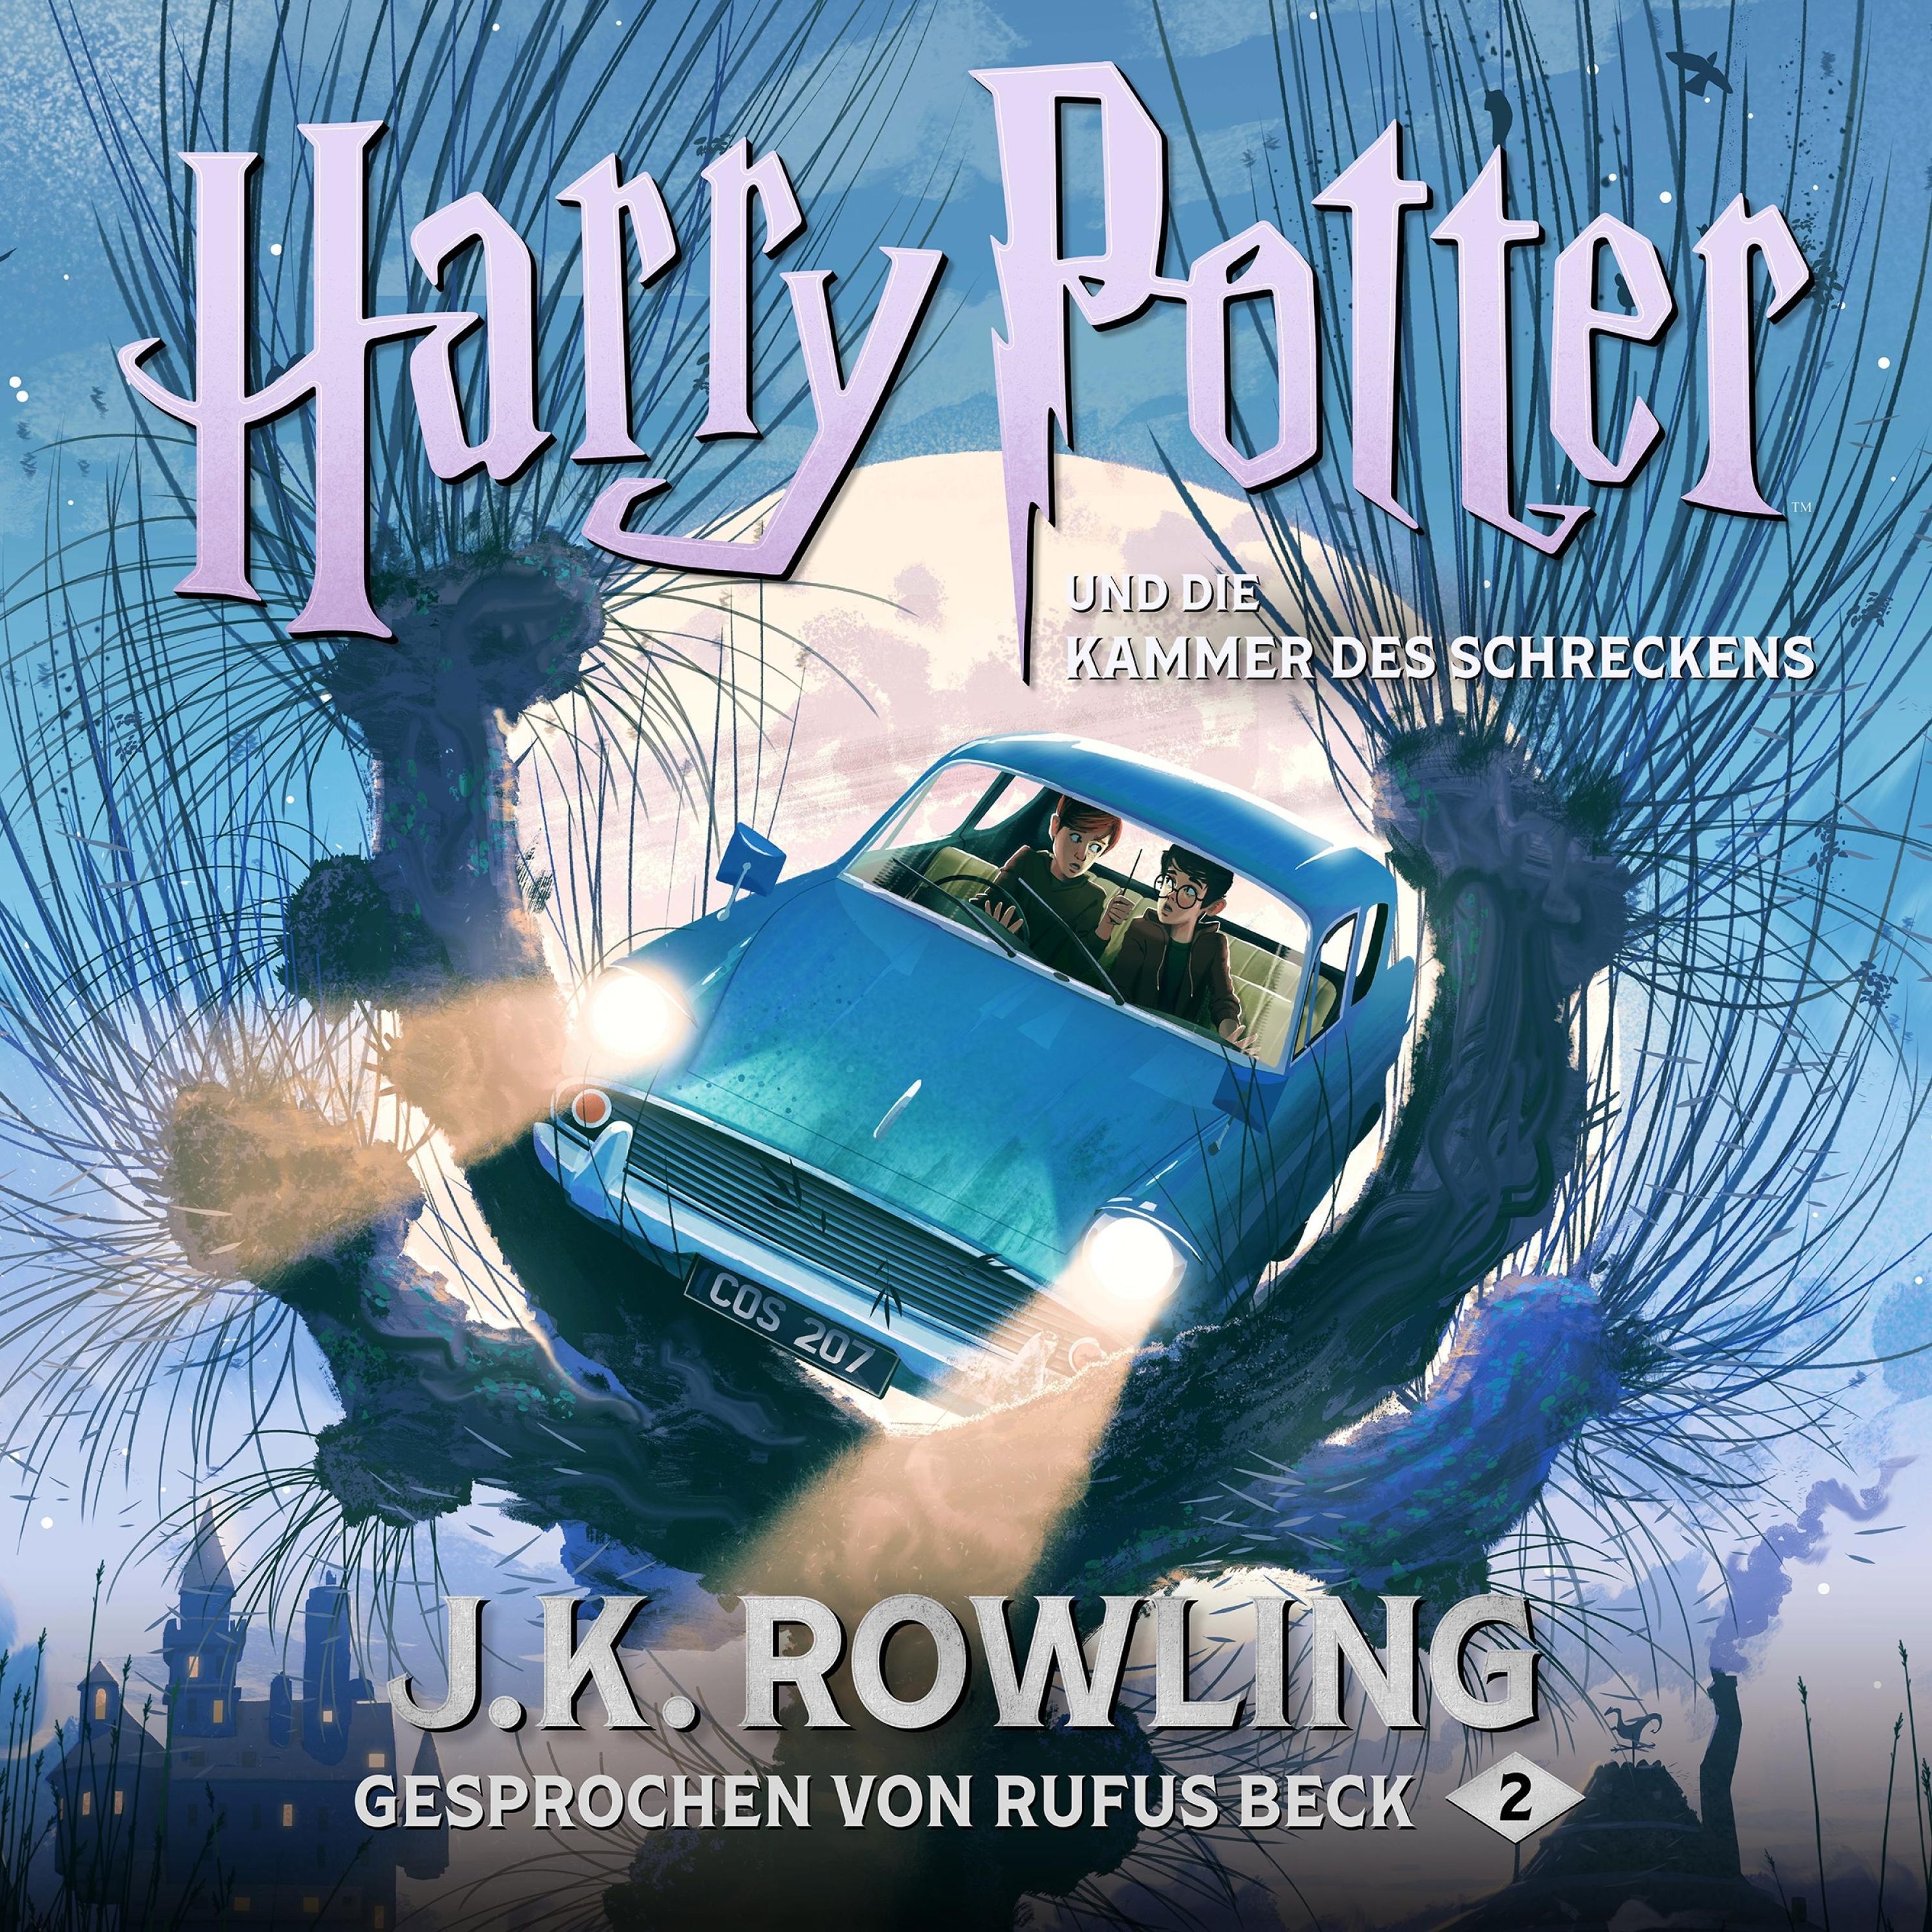 Harry Potter - 2 - Harry Potter und die Kammer des Schreckens Hörbuch  Download